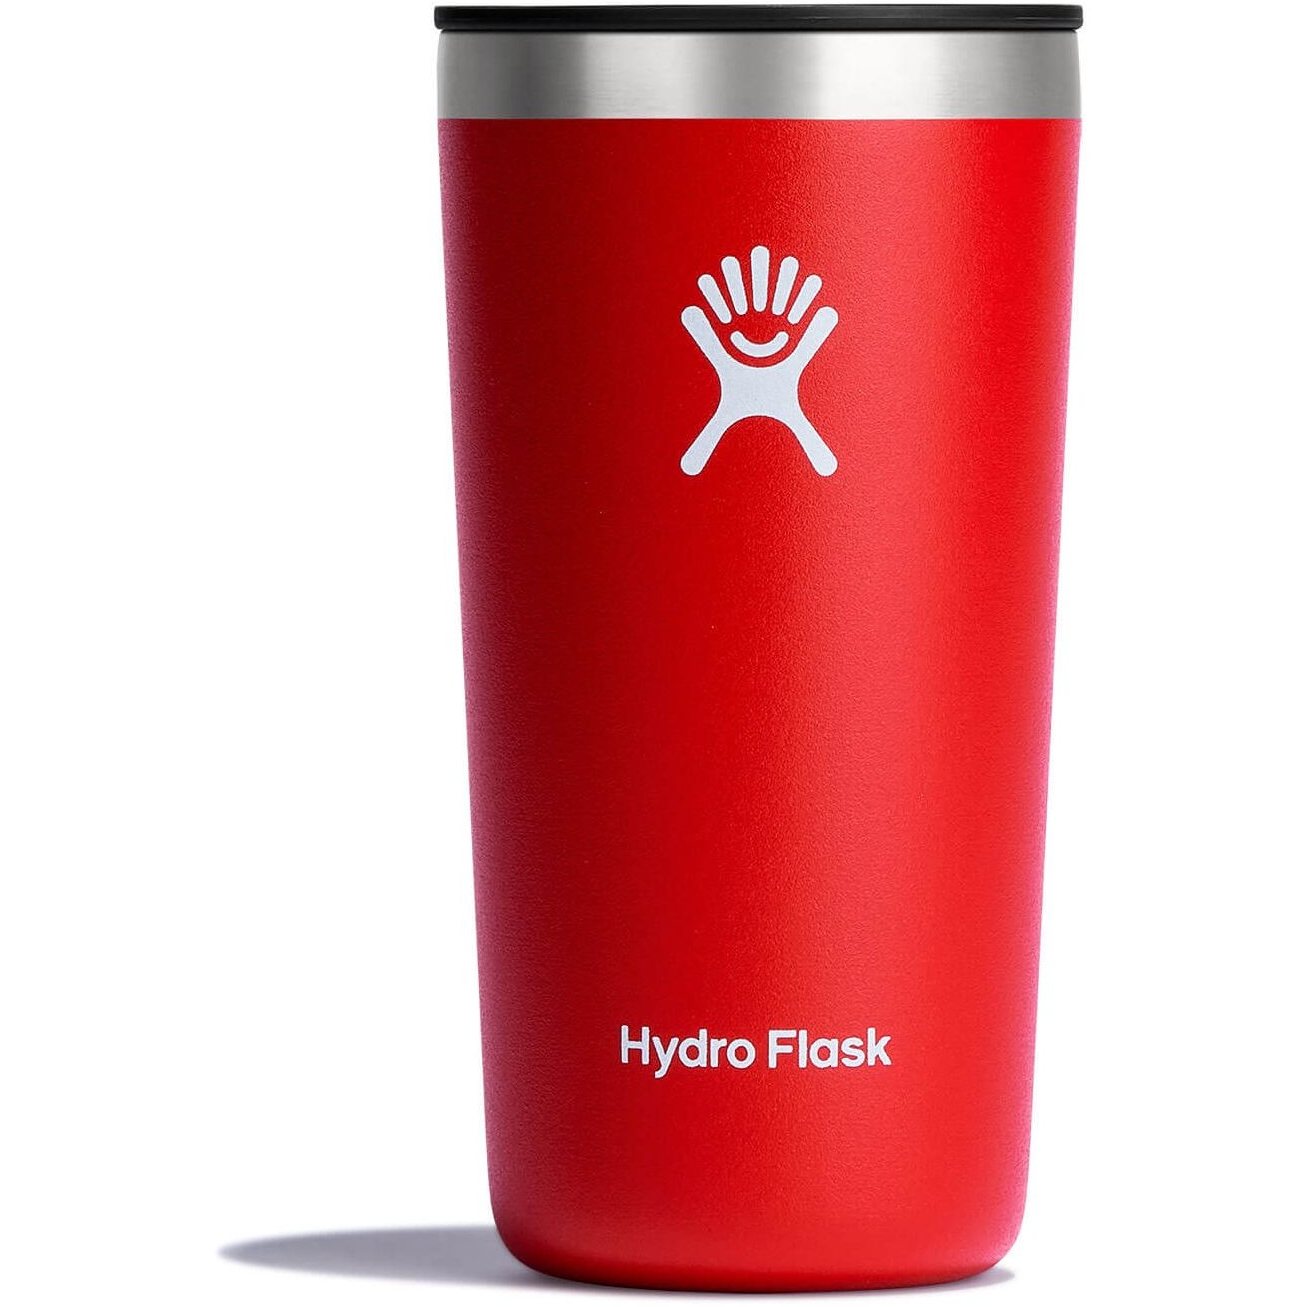 Hydro Flask 12 oz All Around Tumbler Black : Home & Kitchen 